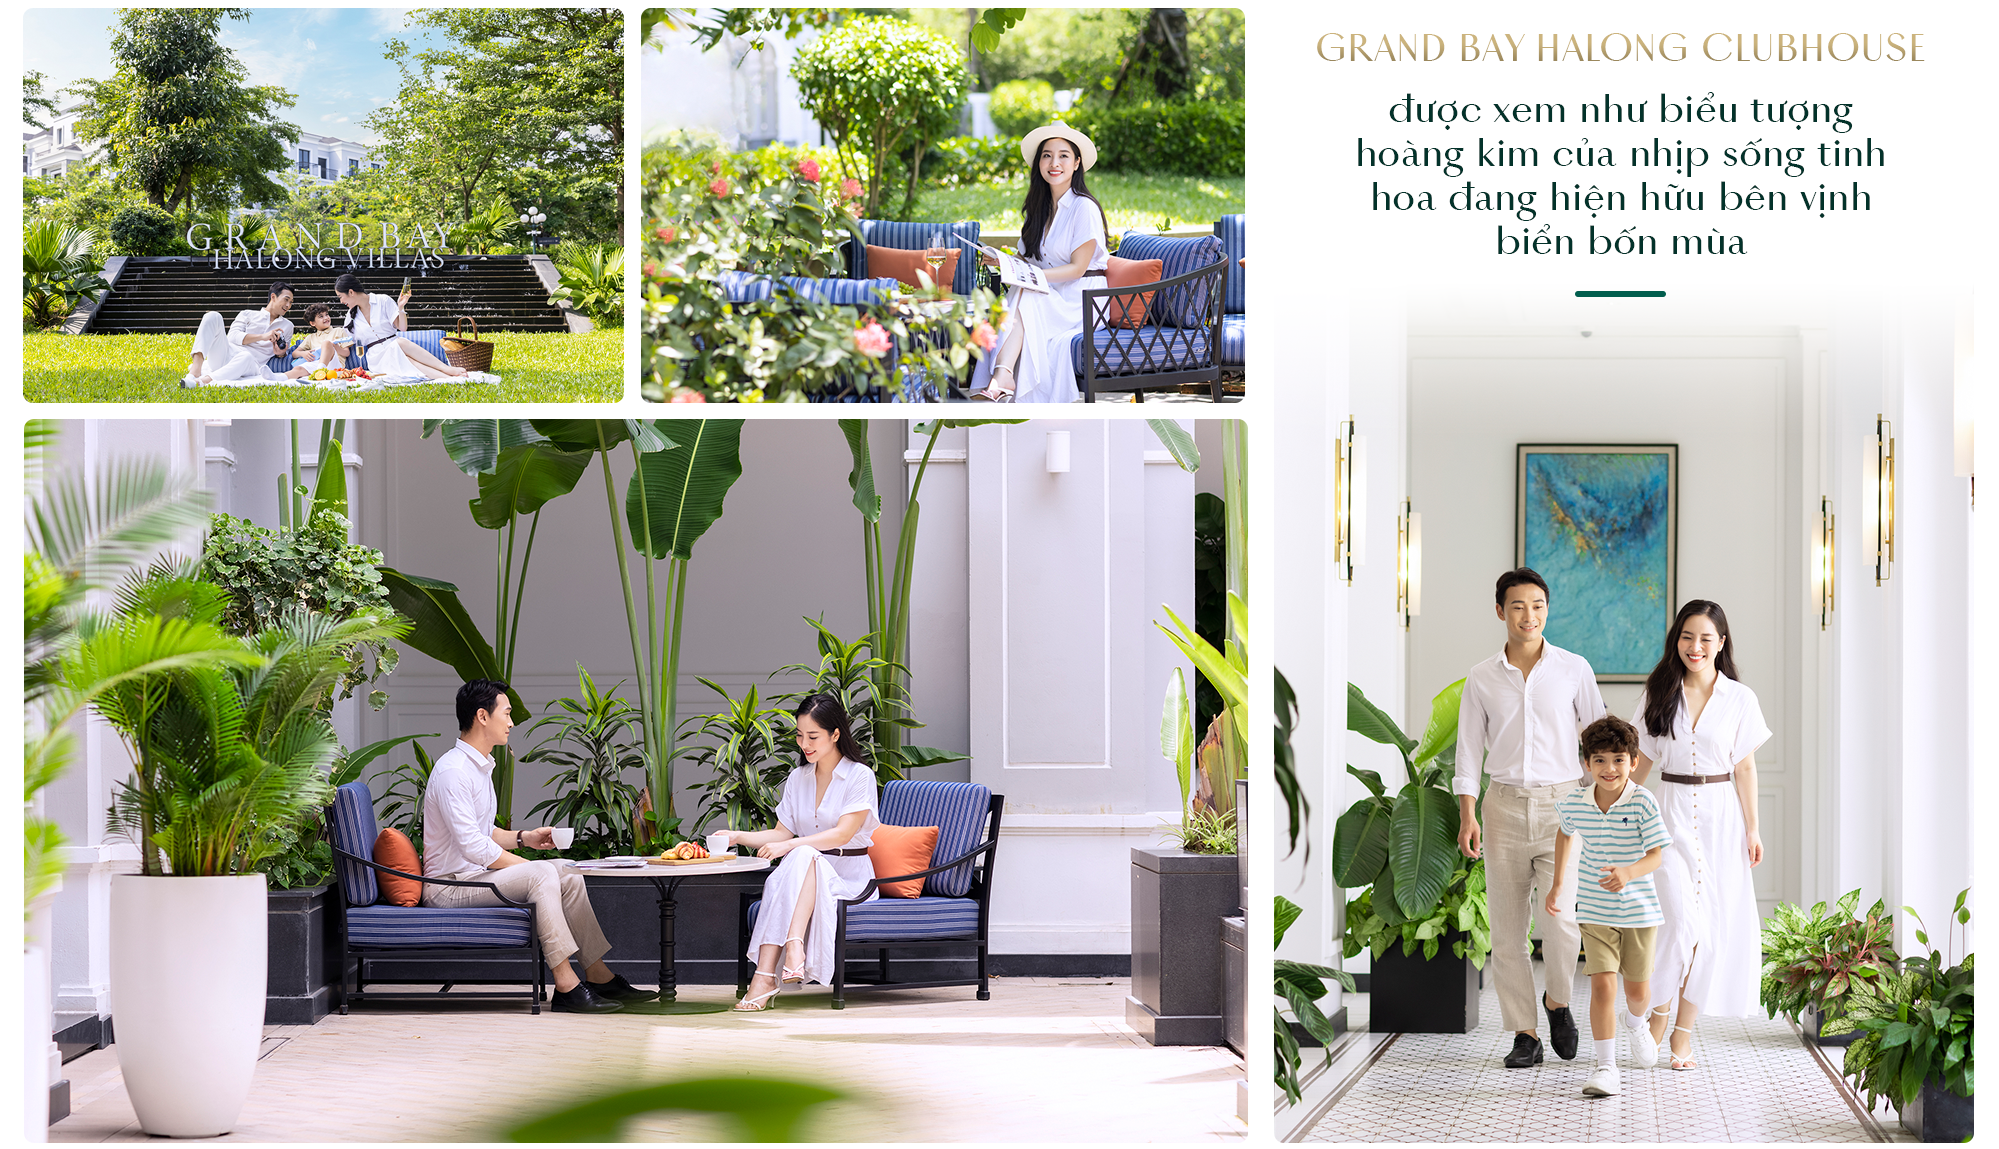 Grand Bay Halong Villas: Bến đỗ của phong cách sống Resort living sang trọng bên vịnh biển - Ảnh 6.